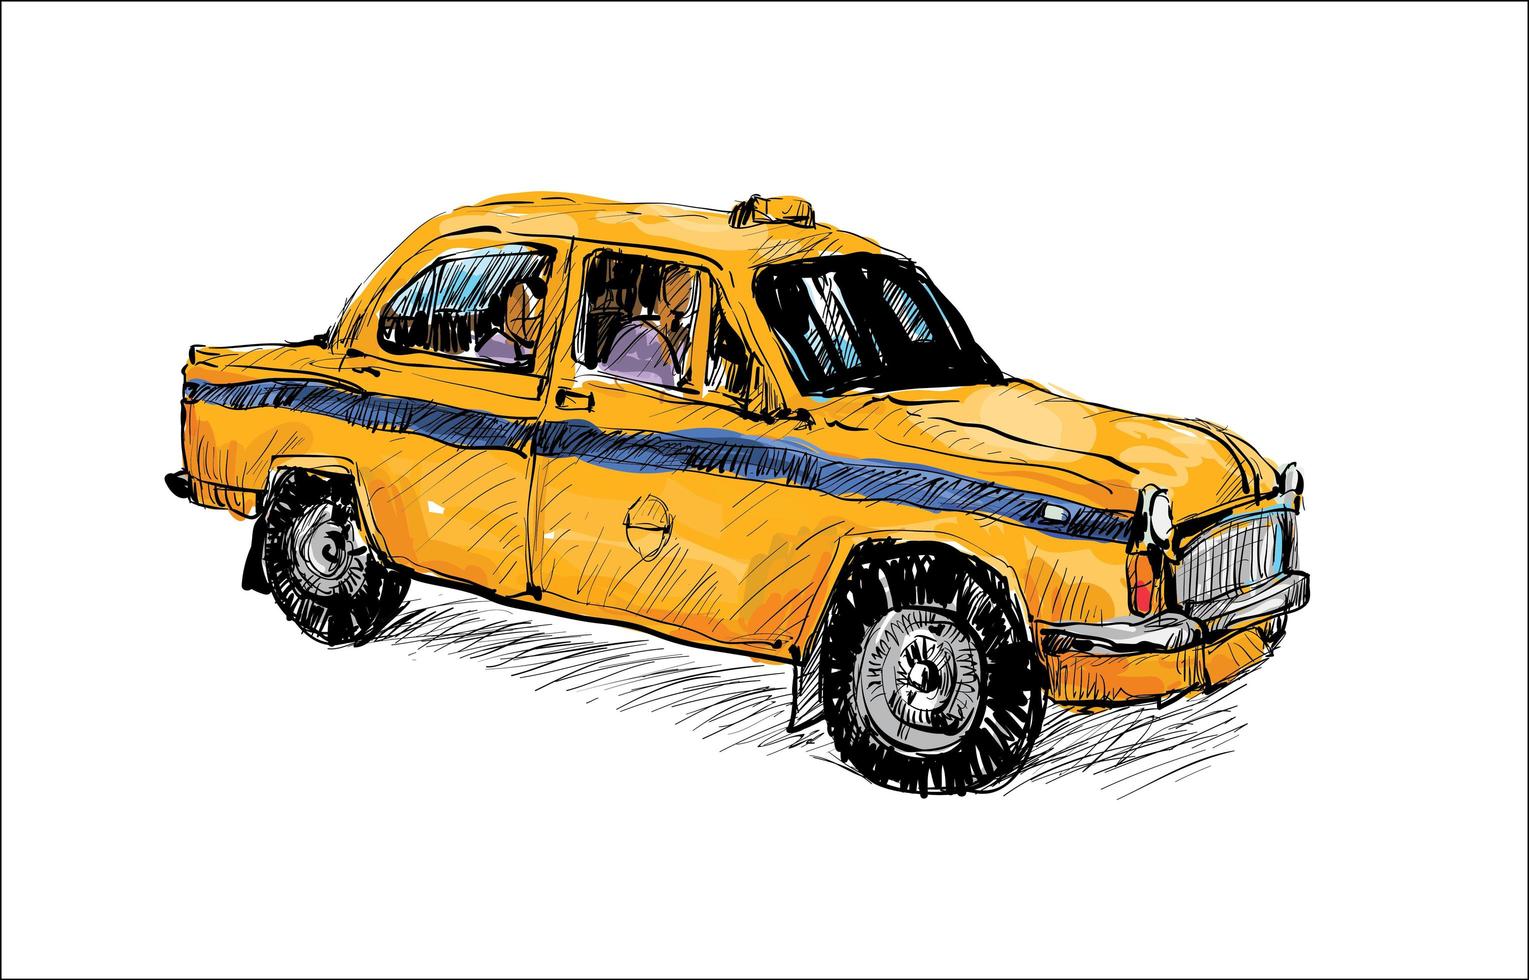 Farbskizze eines alten Taxis vektor